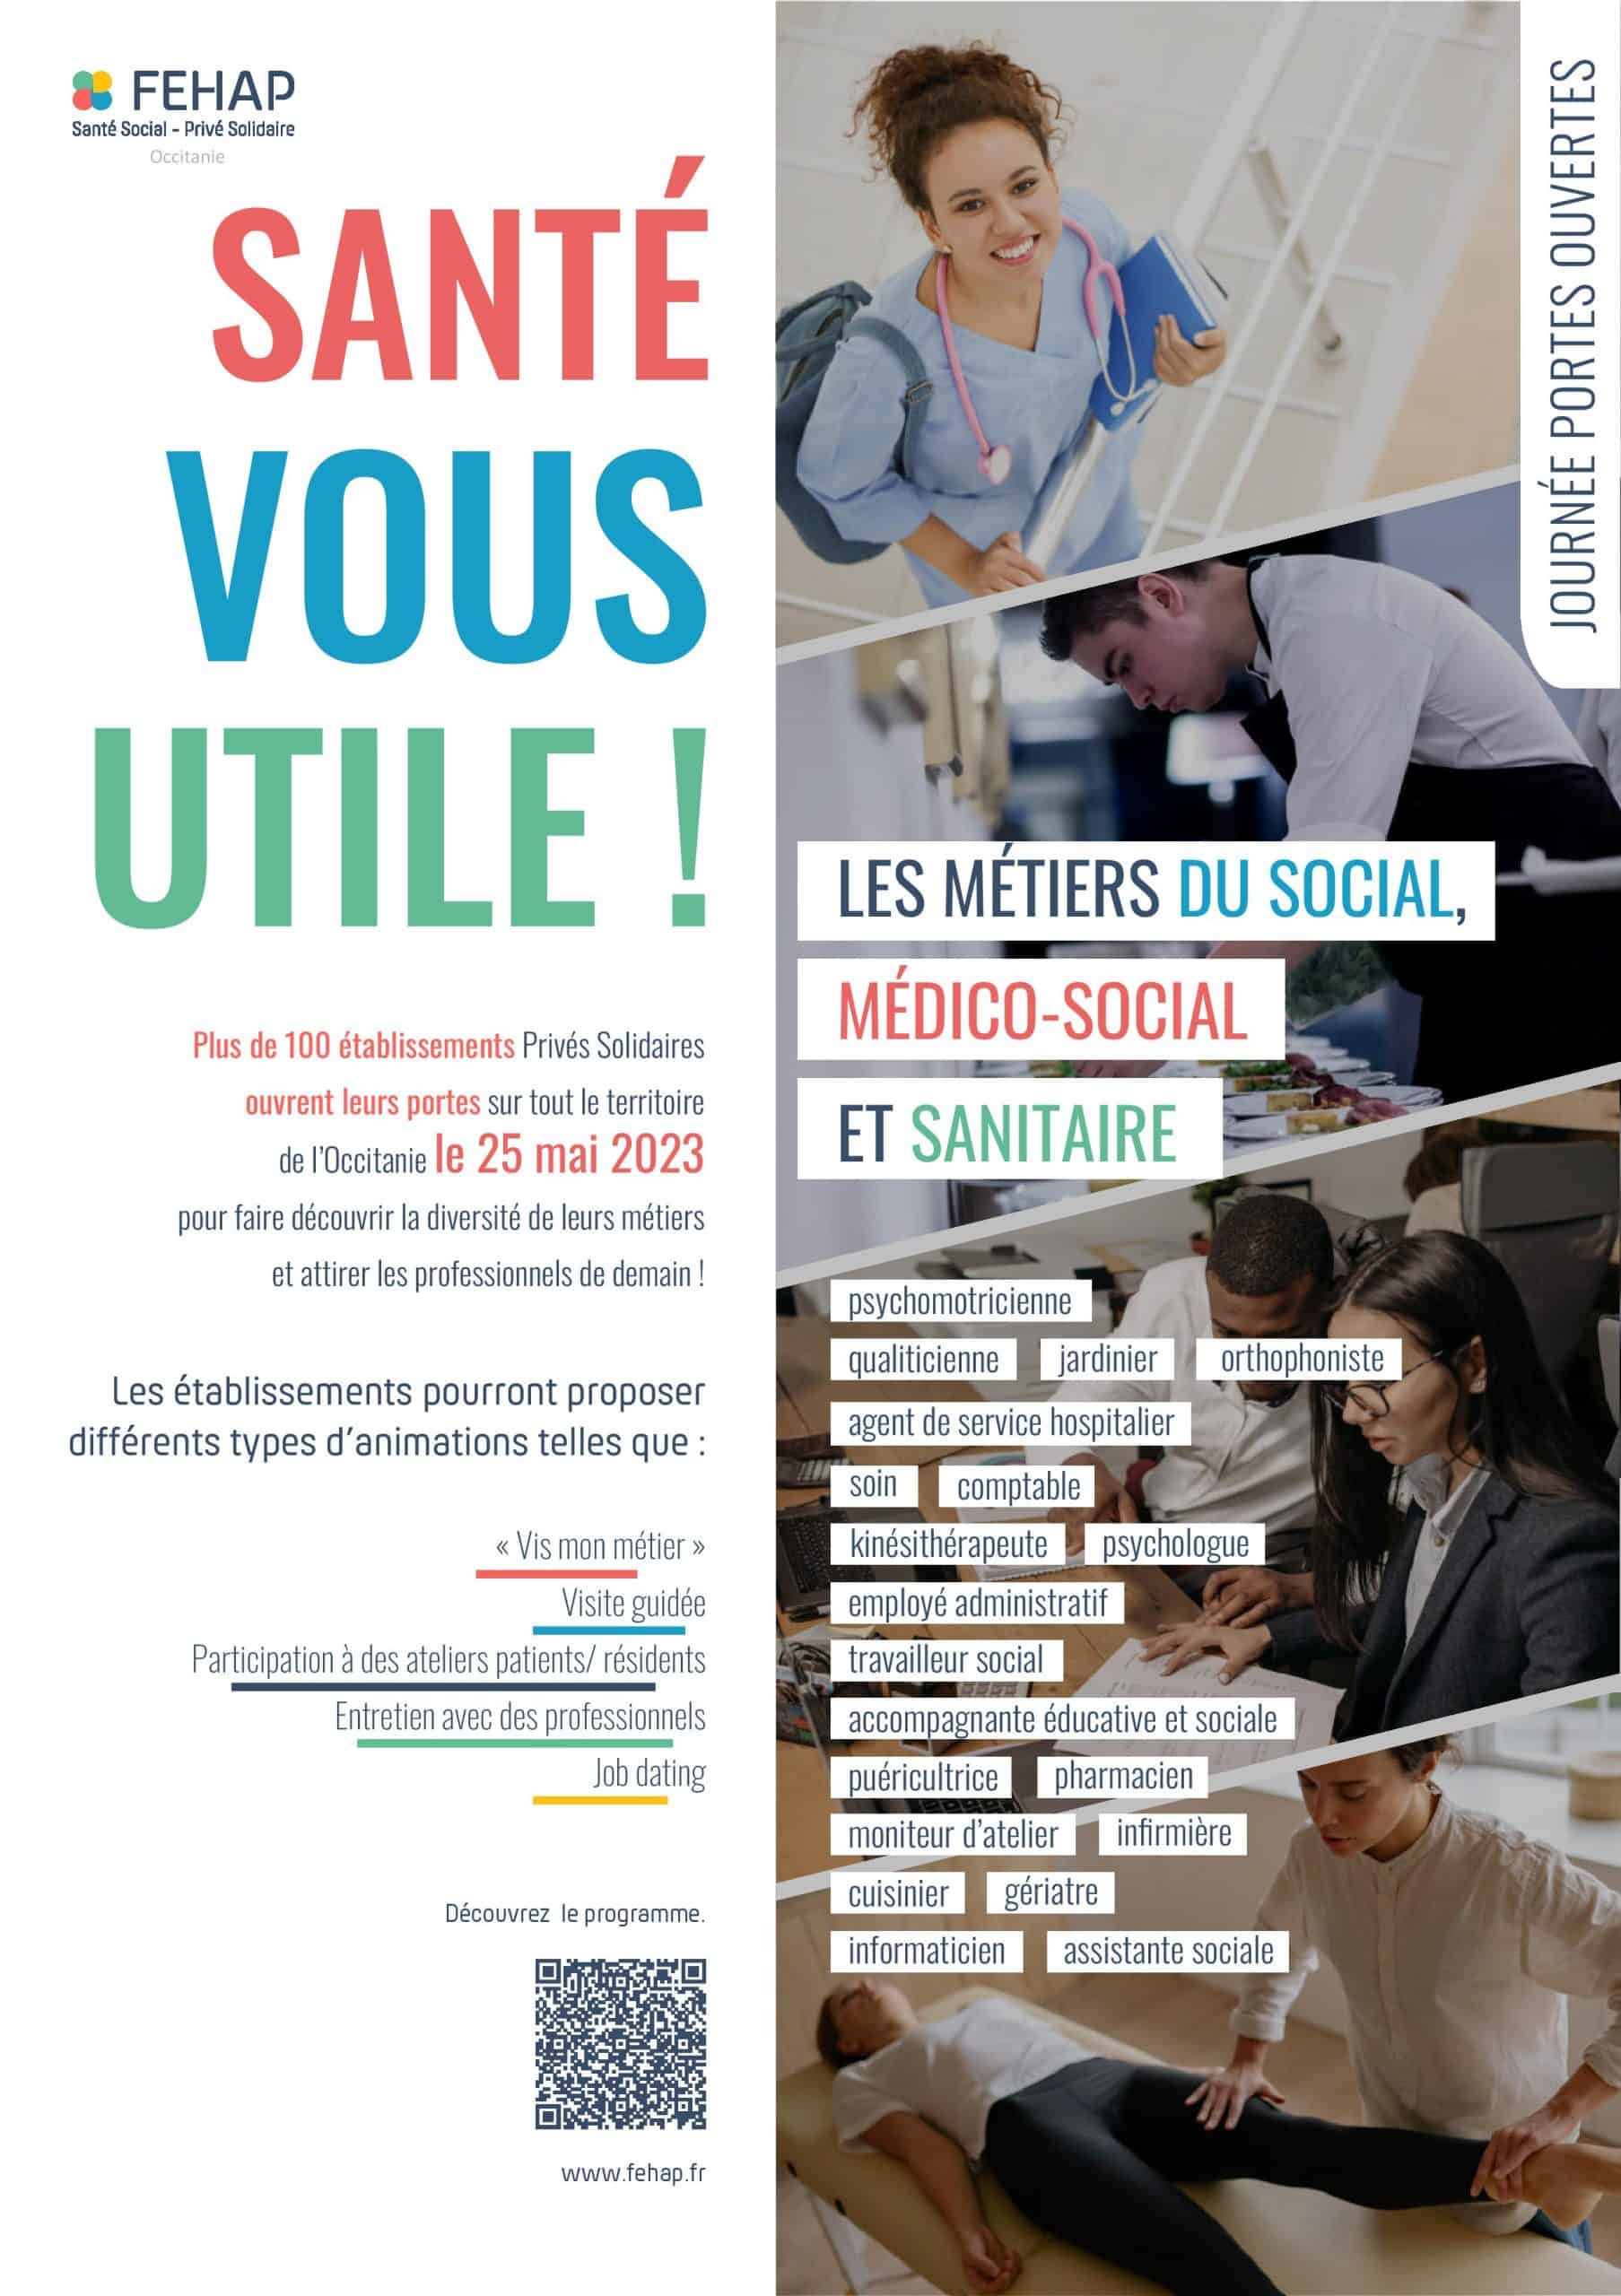 « Santé vous utile ! » : Le 25 mai, les établissements FEHAP d’Occitanie, dont l’ICM, vous ouvrent leurs portes